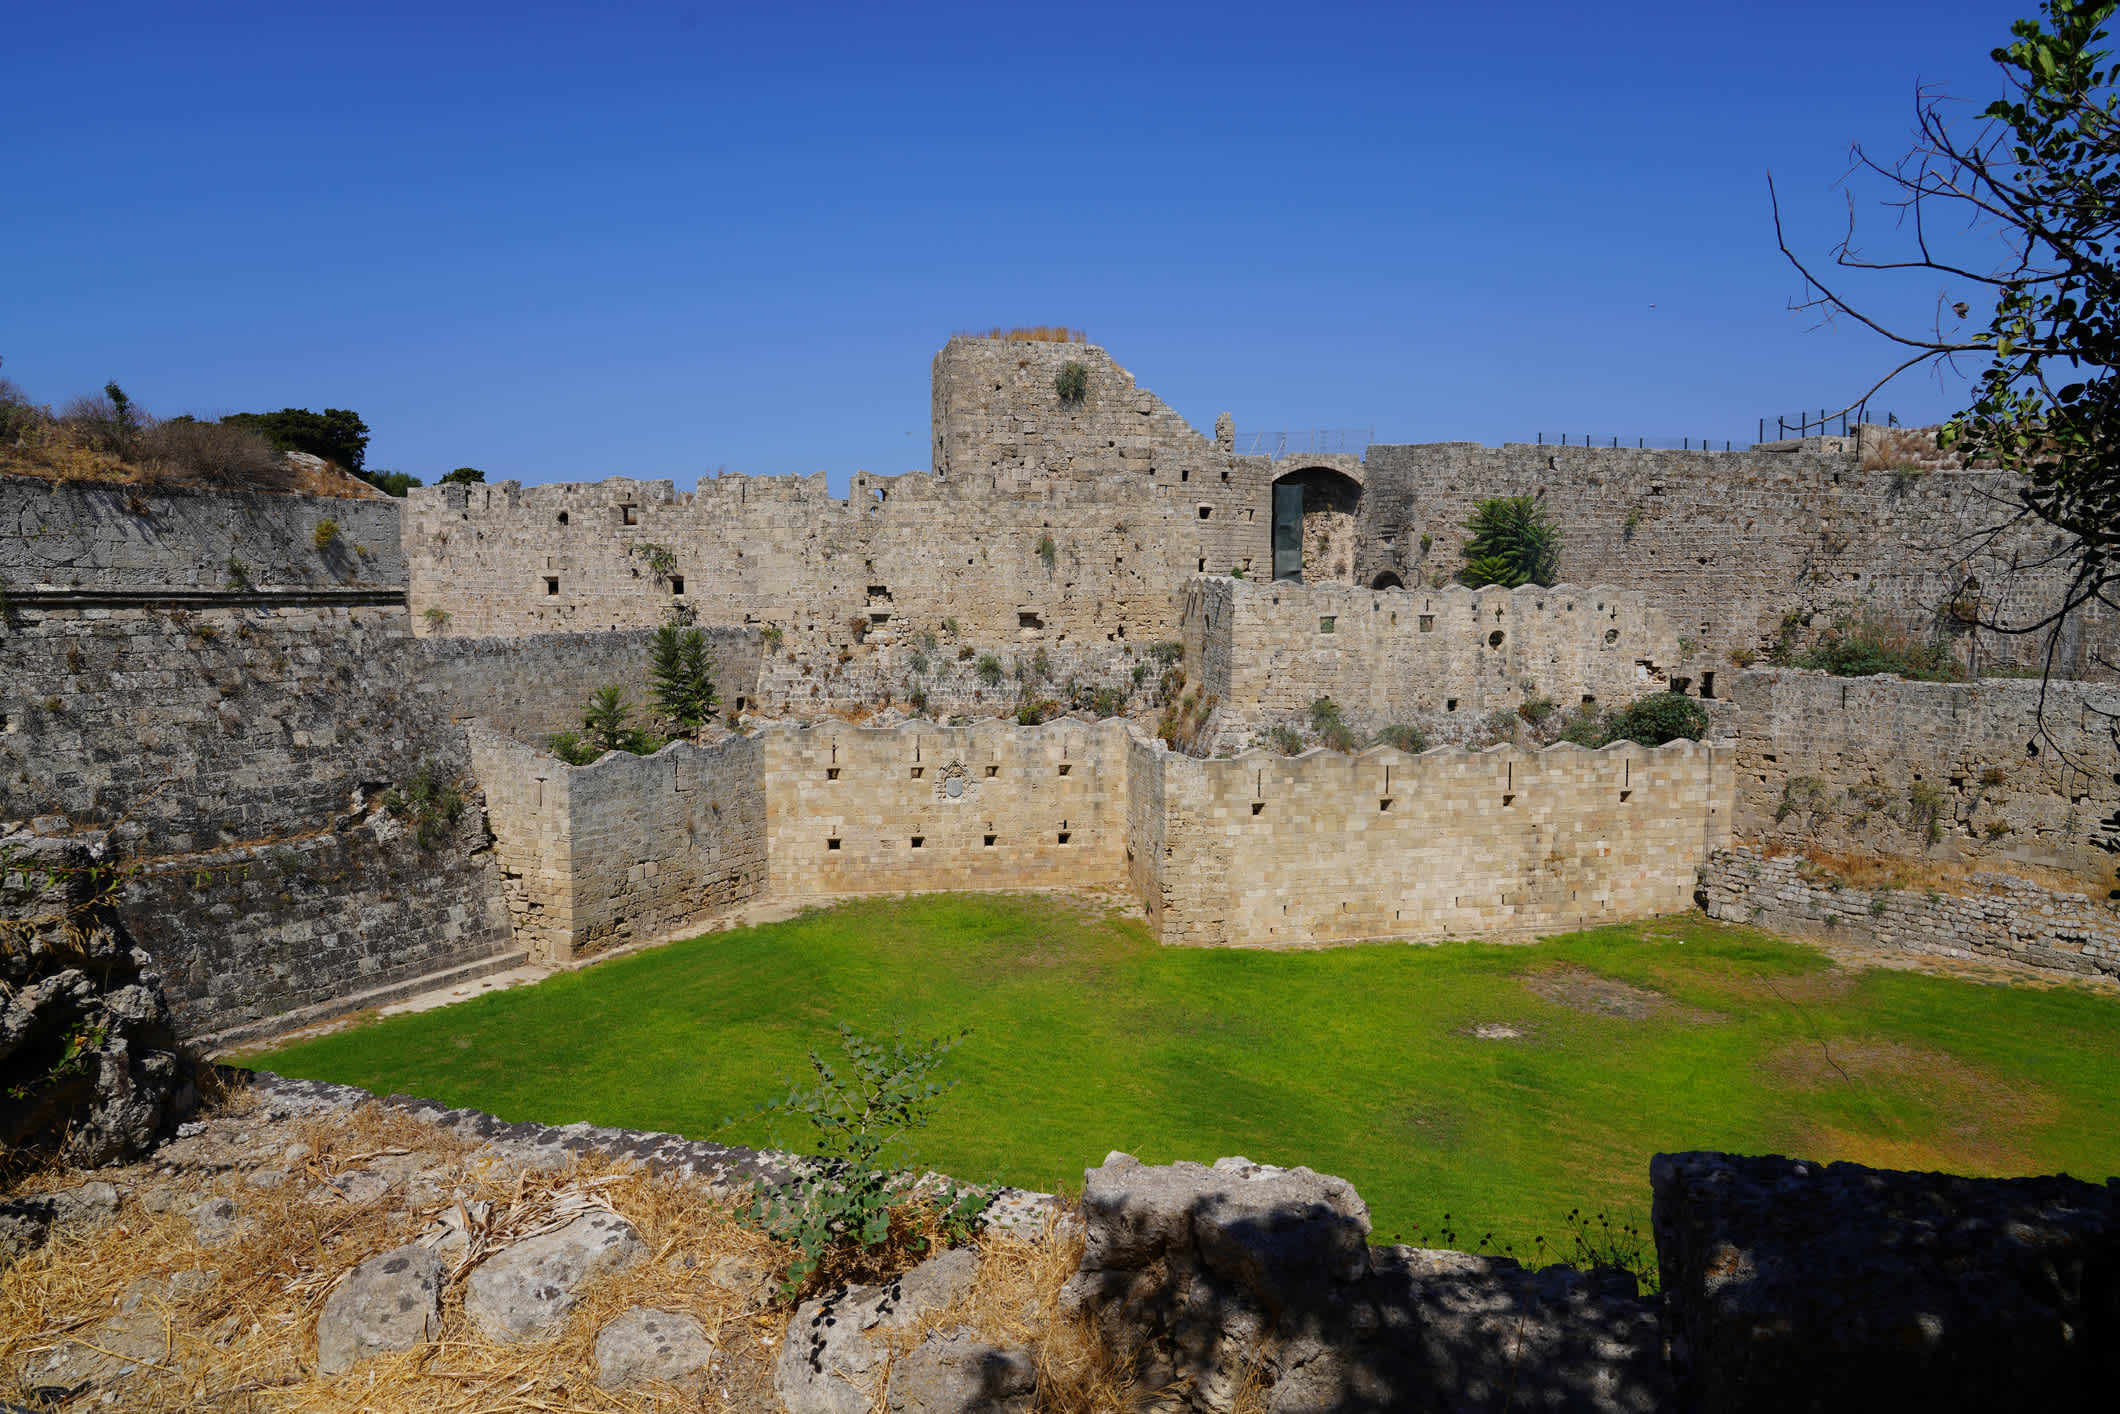 La vue sur les remparts de la vieille ville de Rhodes, en Grèce

